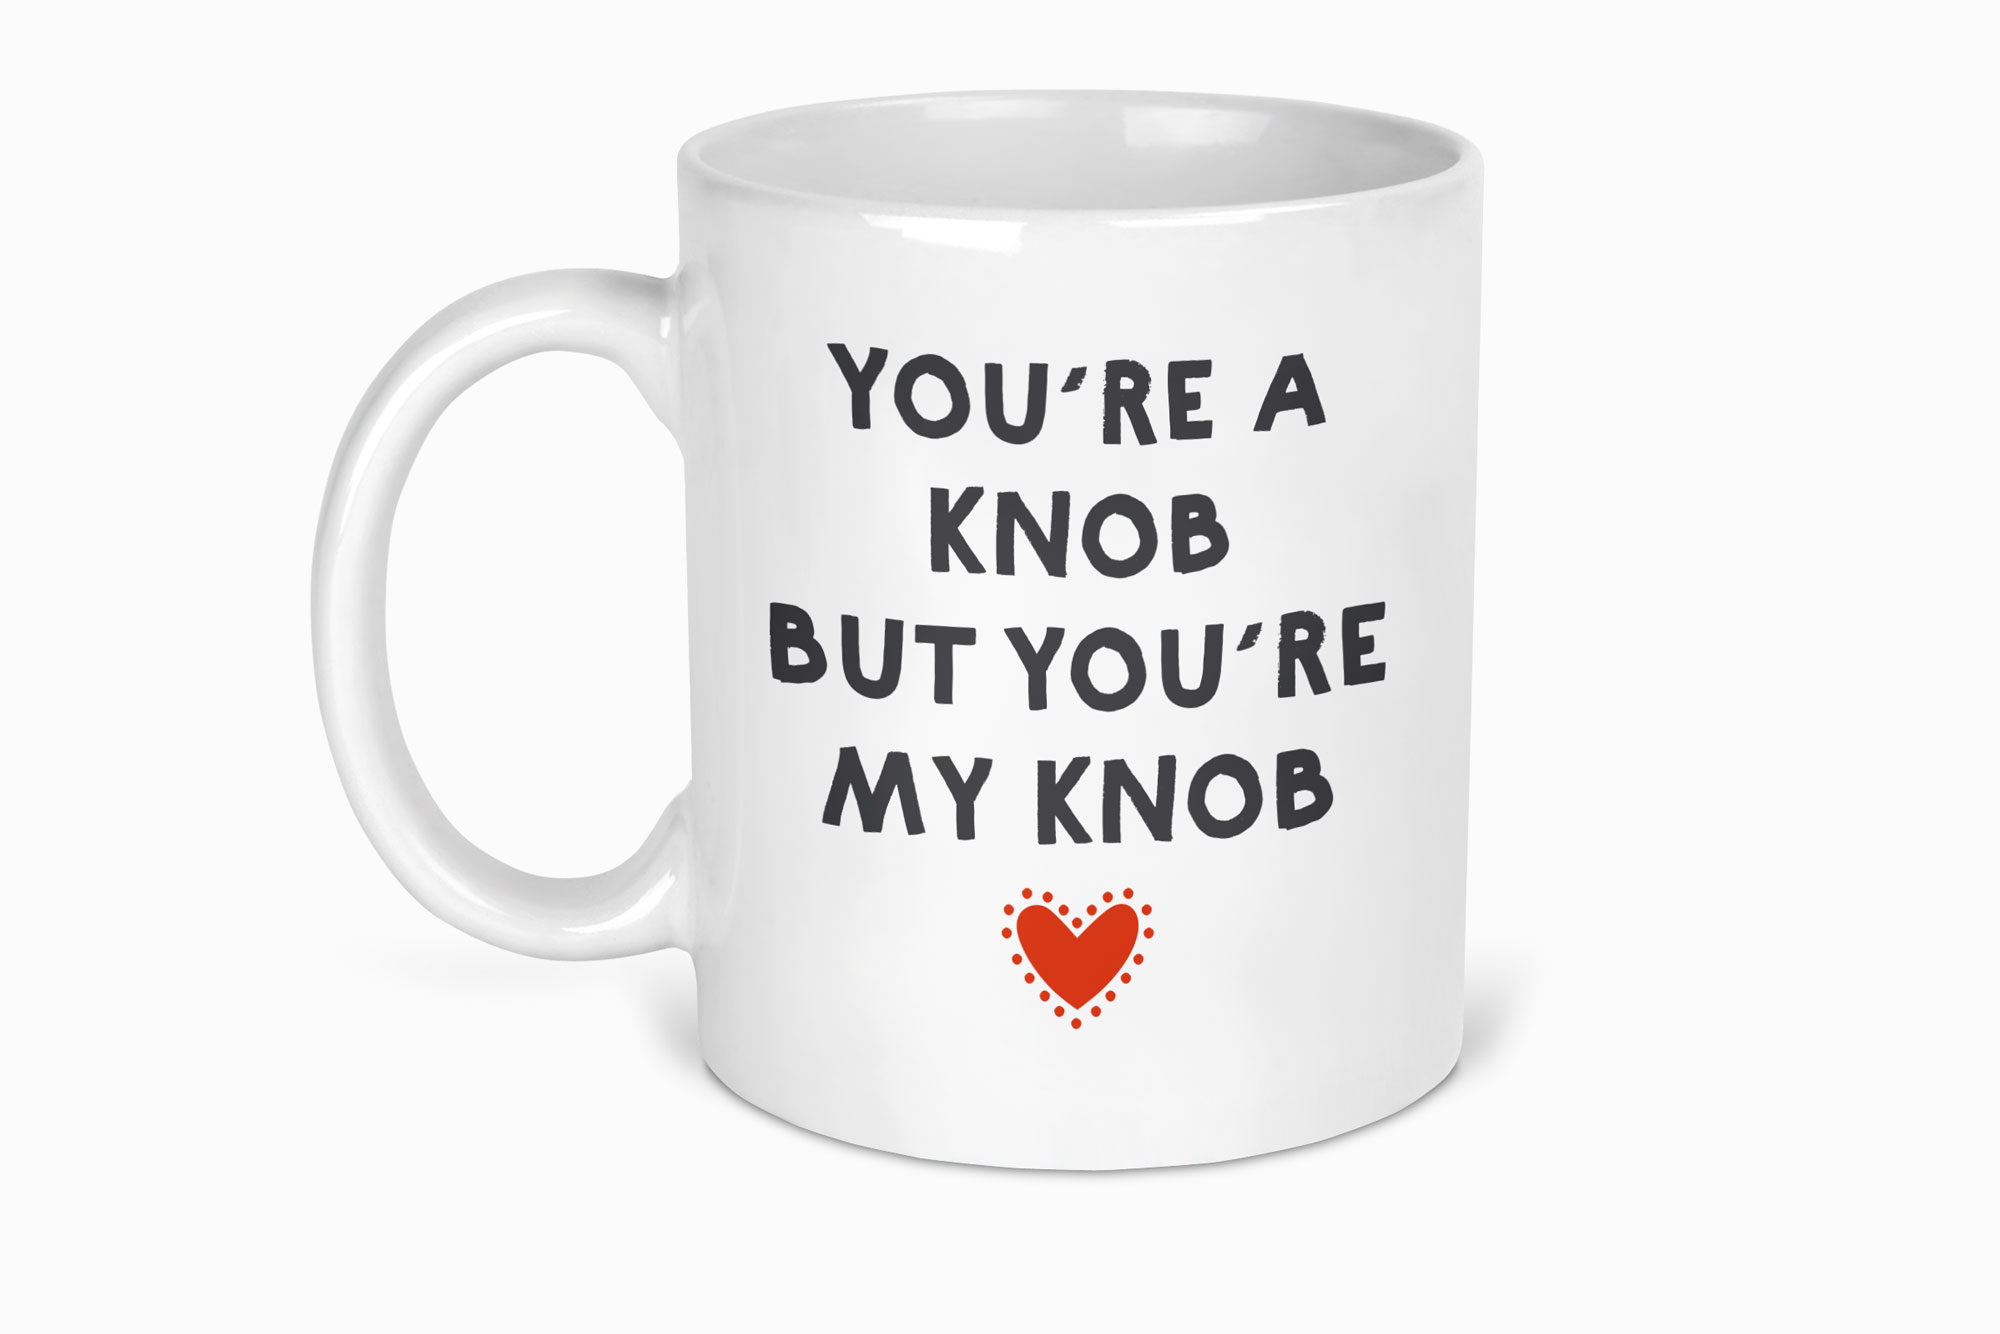 You're a knob mug